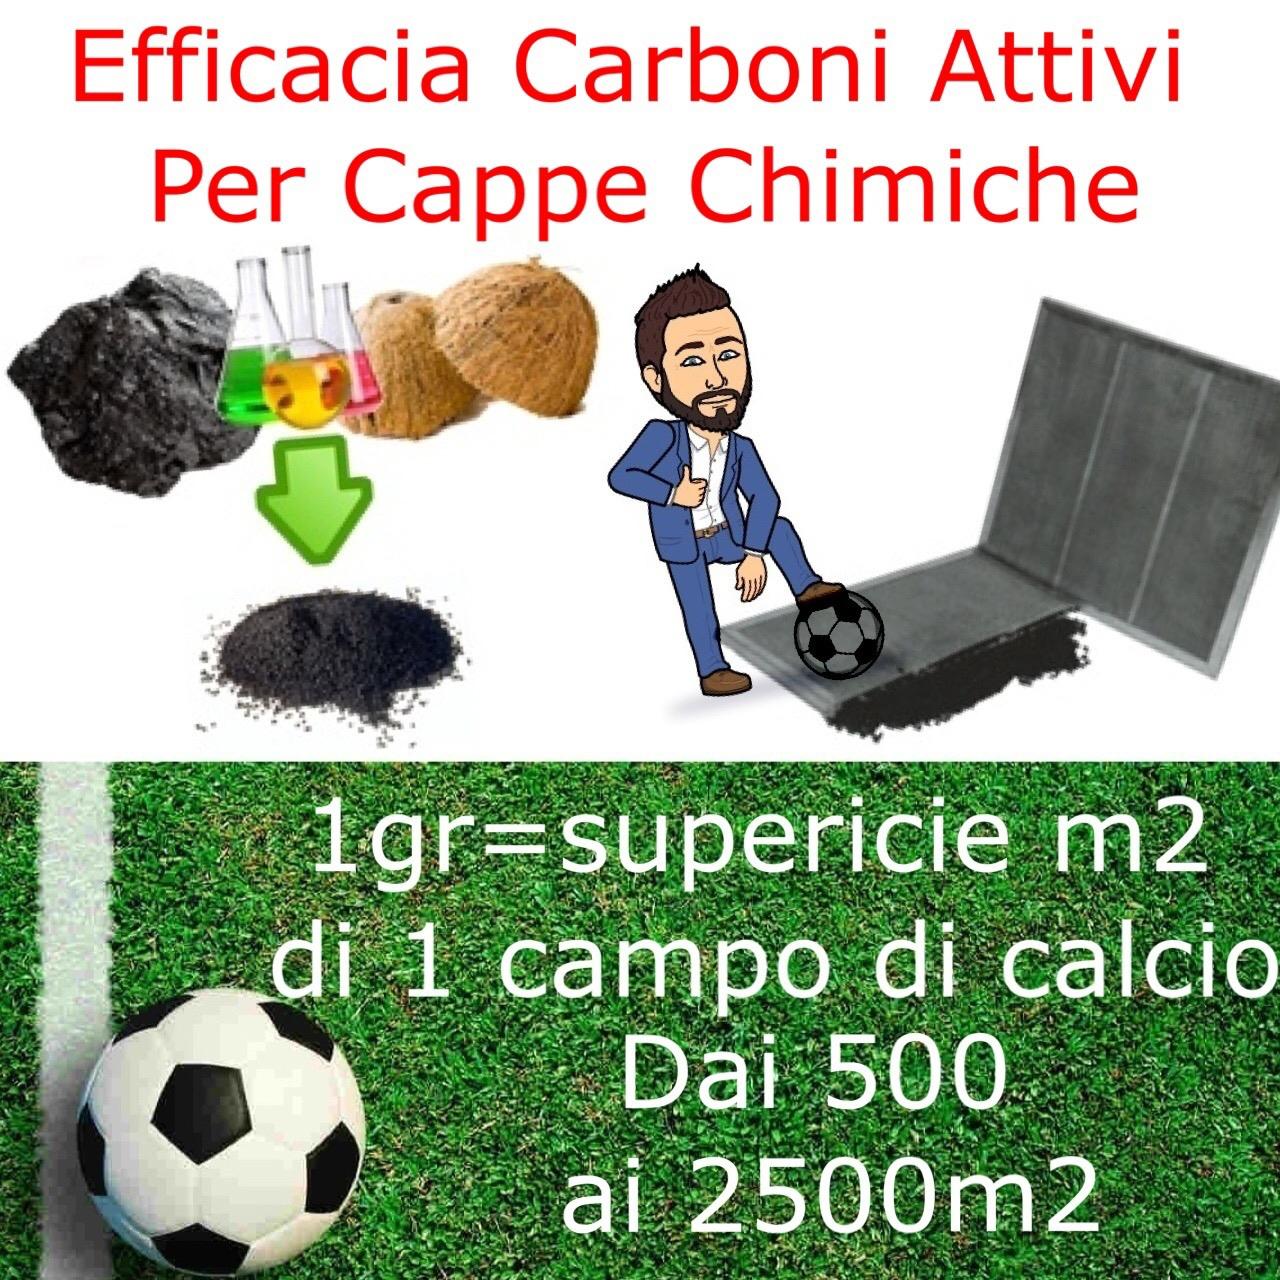 Carboni attivi 1grammo = 1 campo di calcio